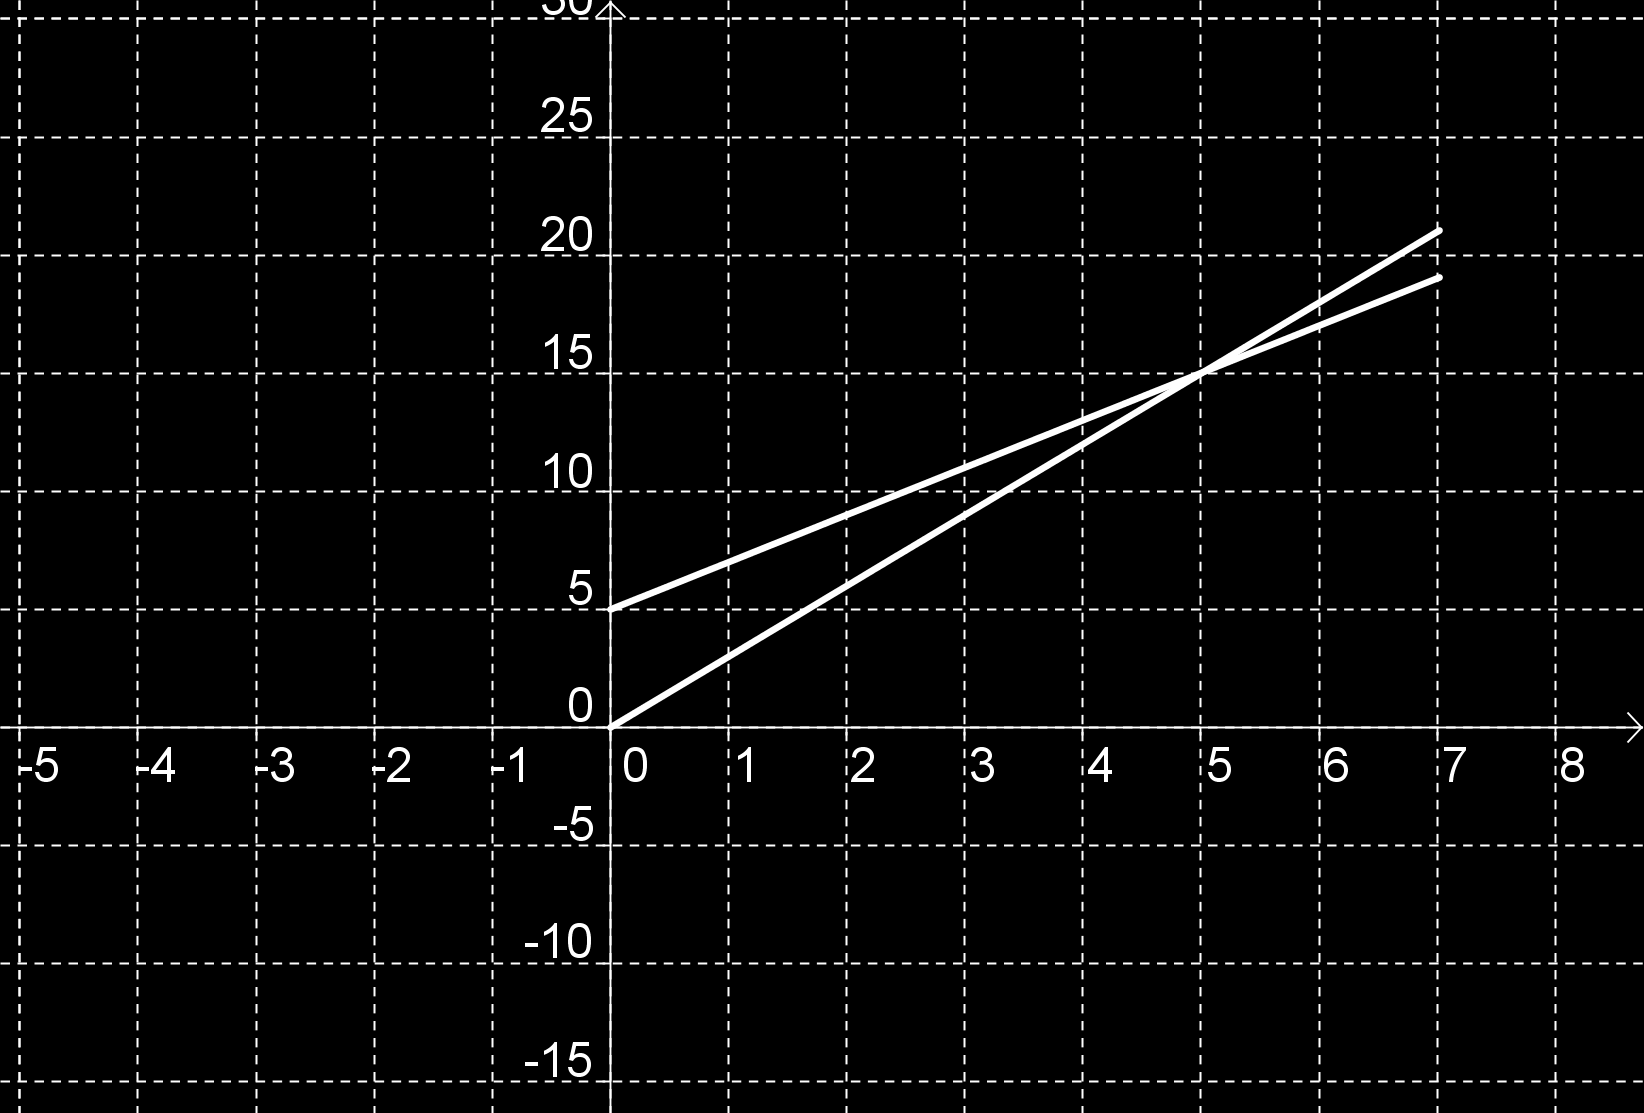 64 KÉZI CSABA GÁBOR a) A függvények: b) A költségnövekedés: K(x + 1) K(x) = 5 + (x + 1) (5 + x) = 5 + x + 5 x =. Tehát ha a termelést 1 darabbal növelnénk, akkor euróval nőne a költség.